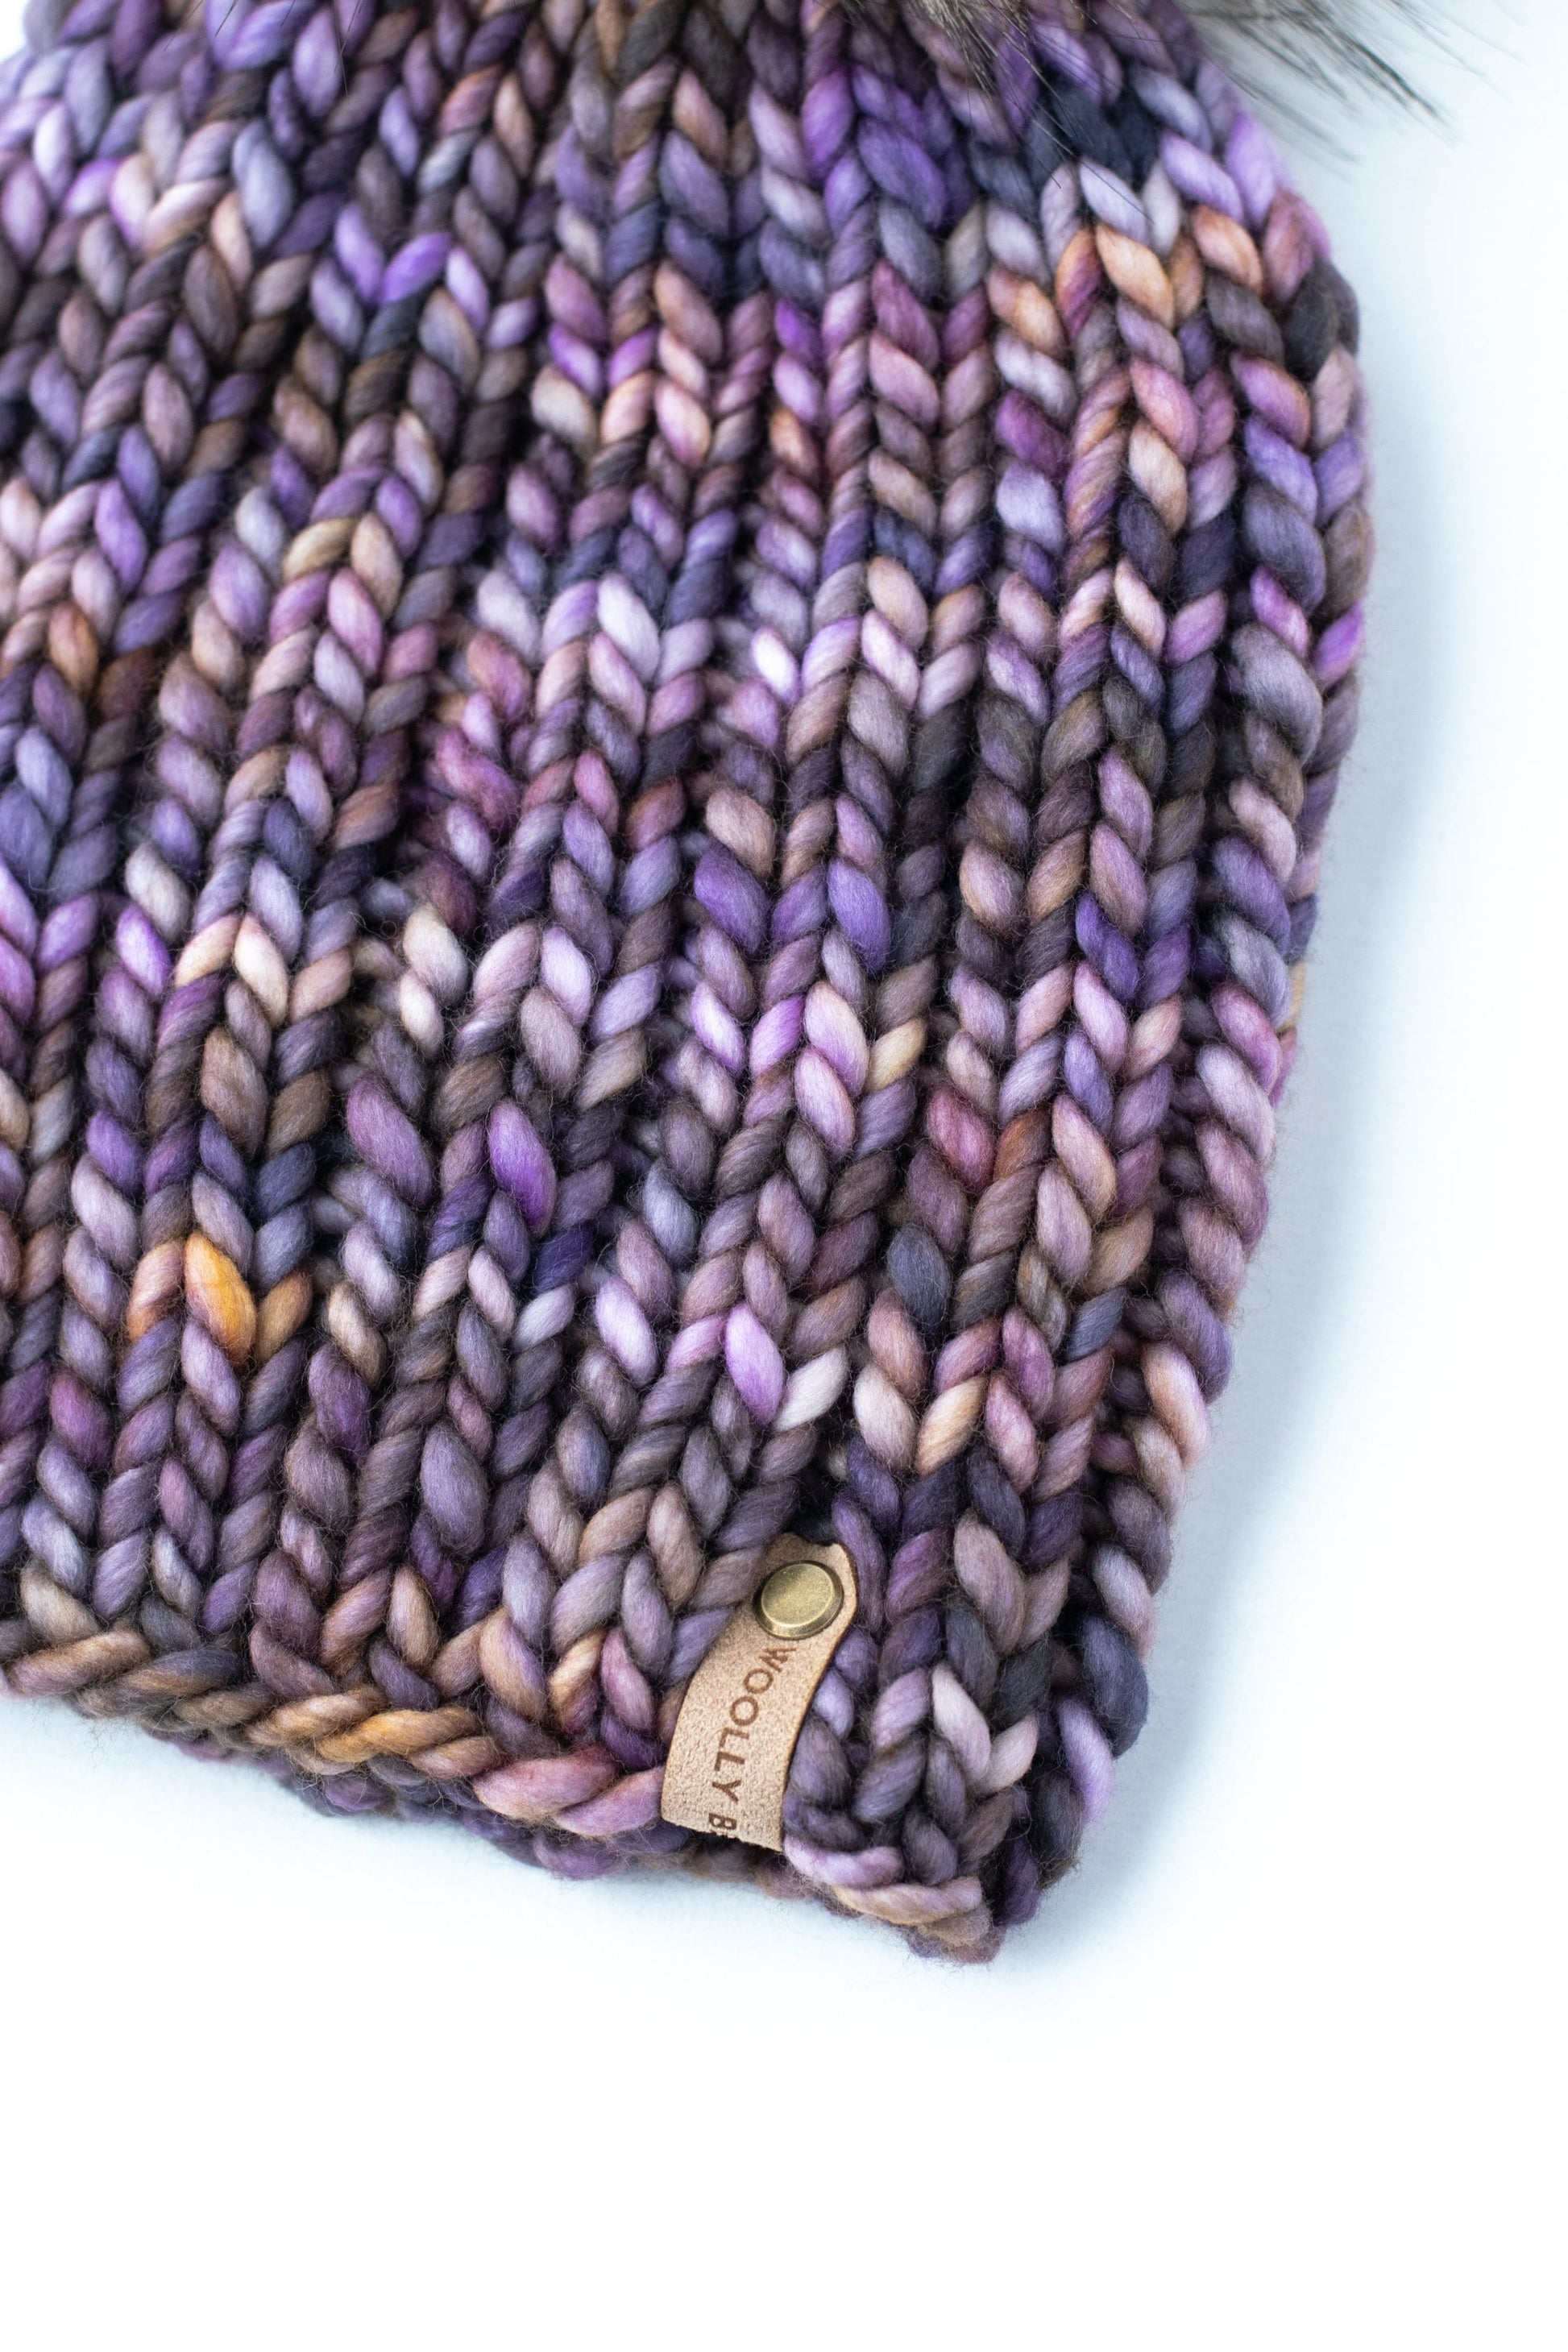 Purple Merino Wool Knit Hat with Faux Fur Pom Pom – Woolly Bear Knits